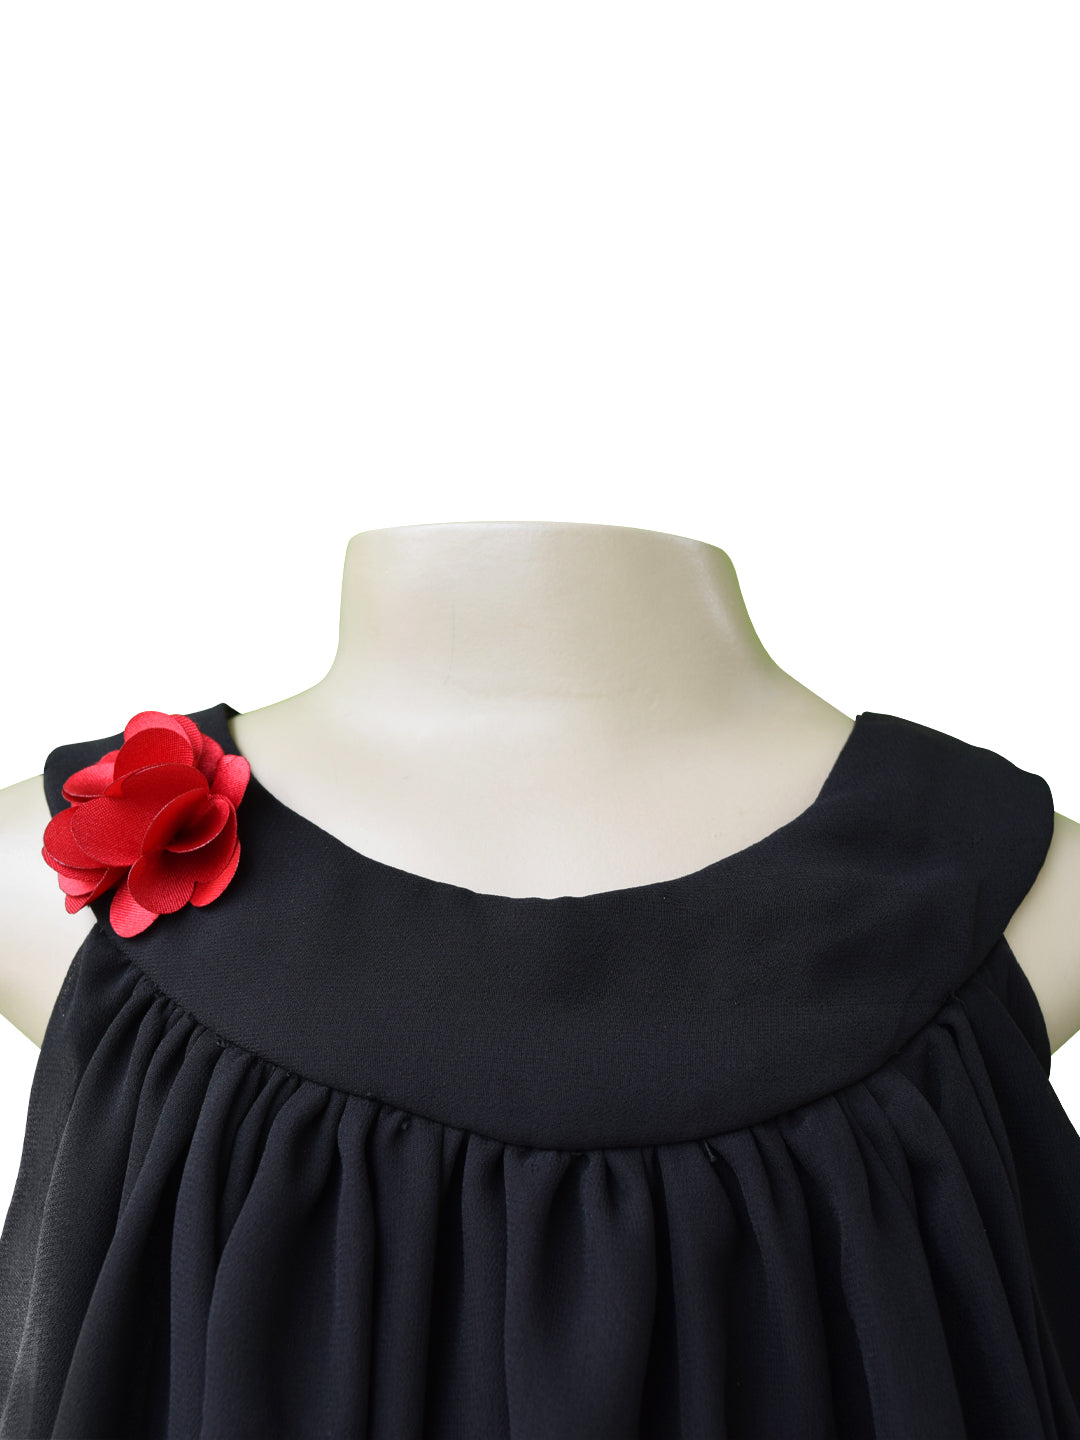 Kids wear online | Black Georgette Swing Dress